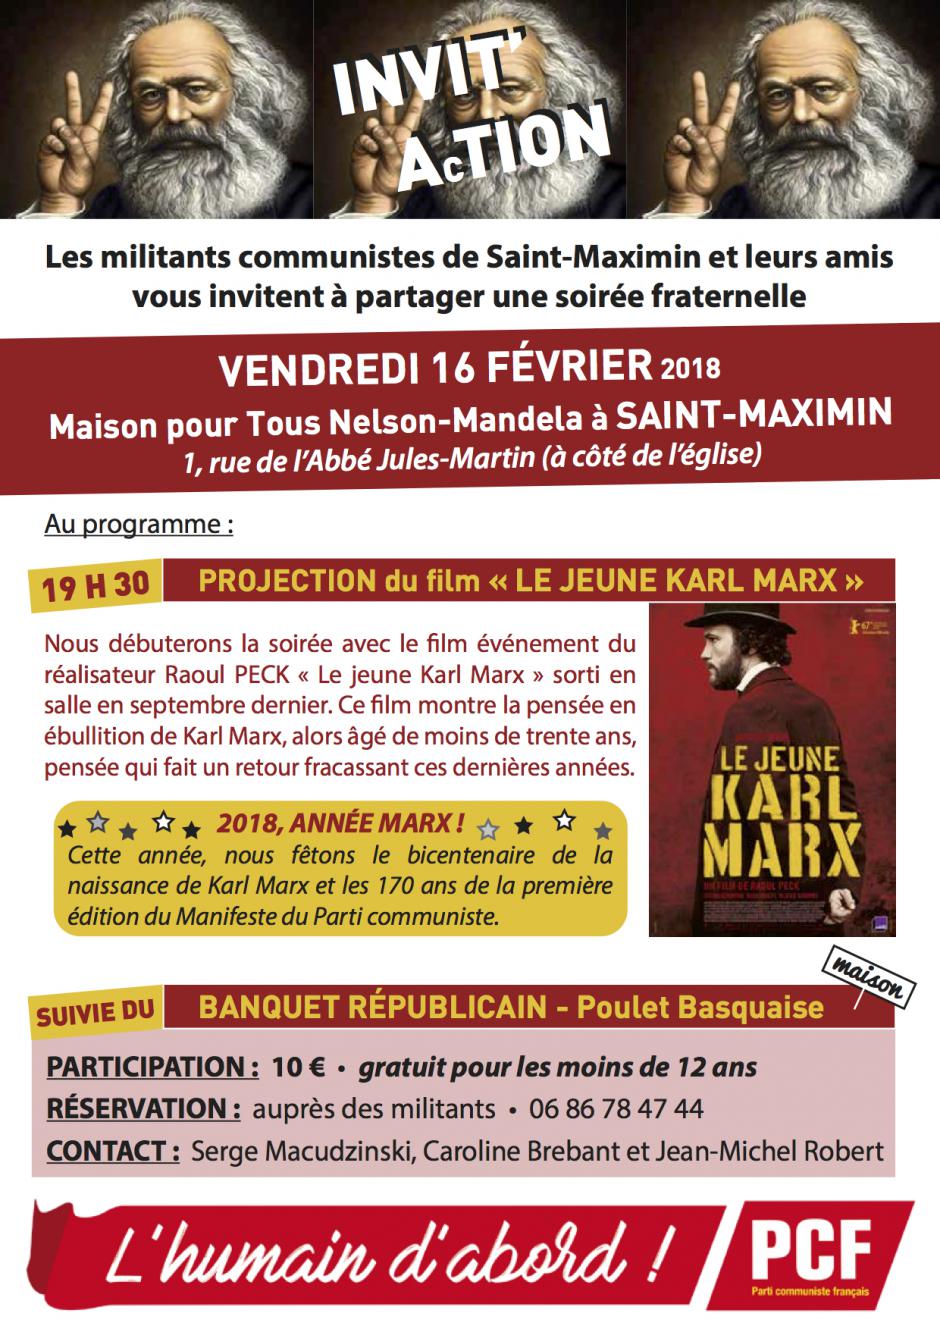 16 février, Saint-Maximin - Banquet républicain de la section PCF de Saint-Maximin et projection de « Le jeune Karl Marx »